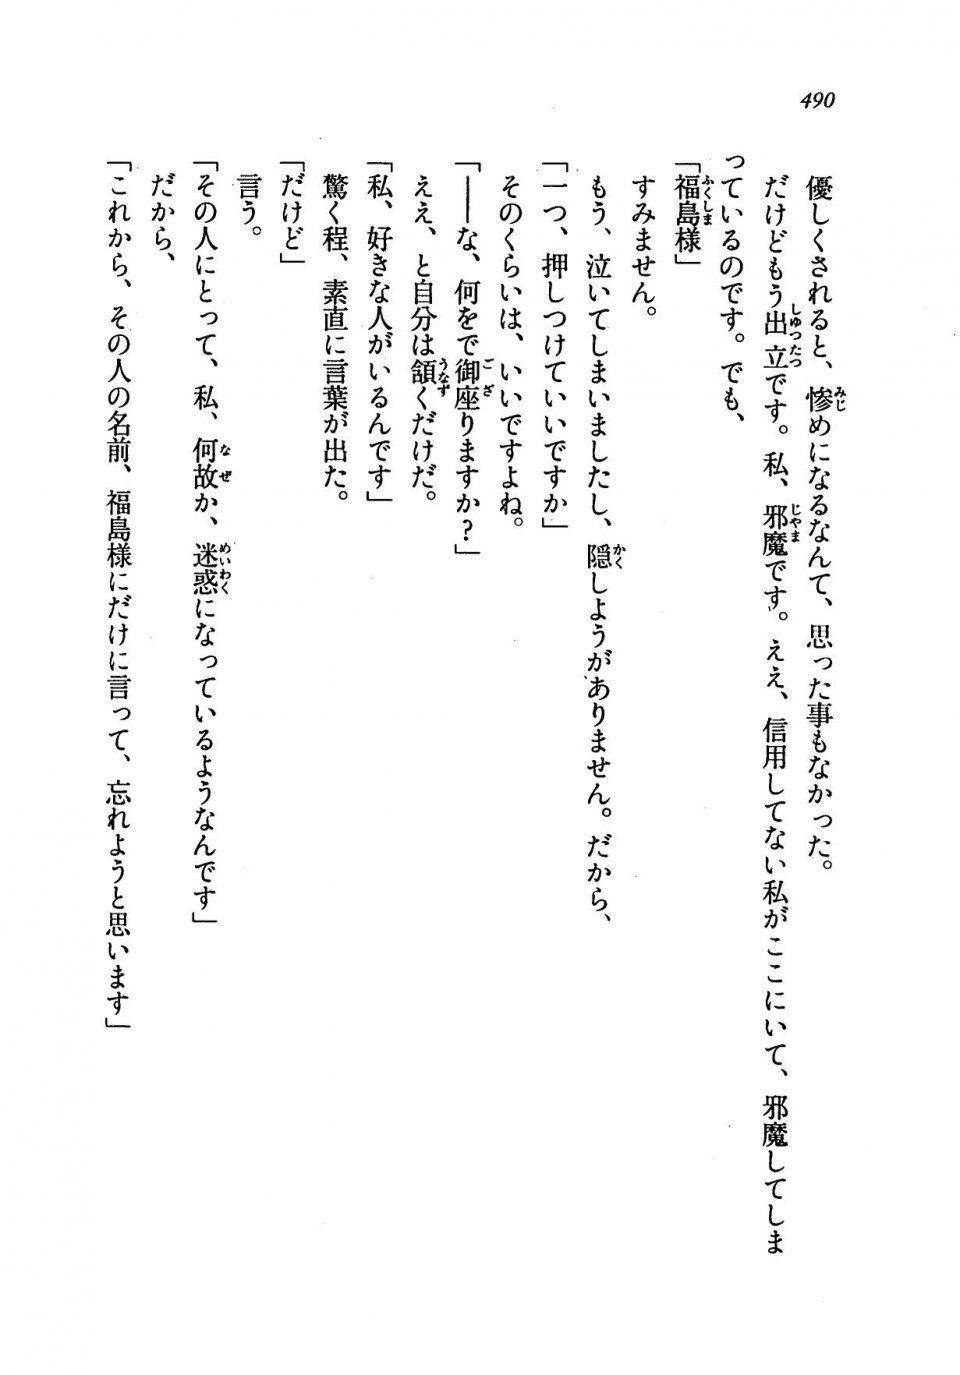 Kyoukai Senjou no Horizon LN Vol 19(8A) - Photo #490